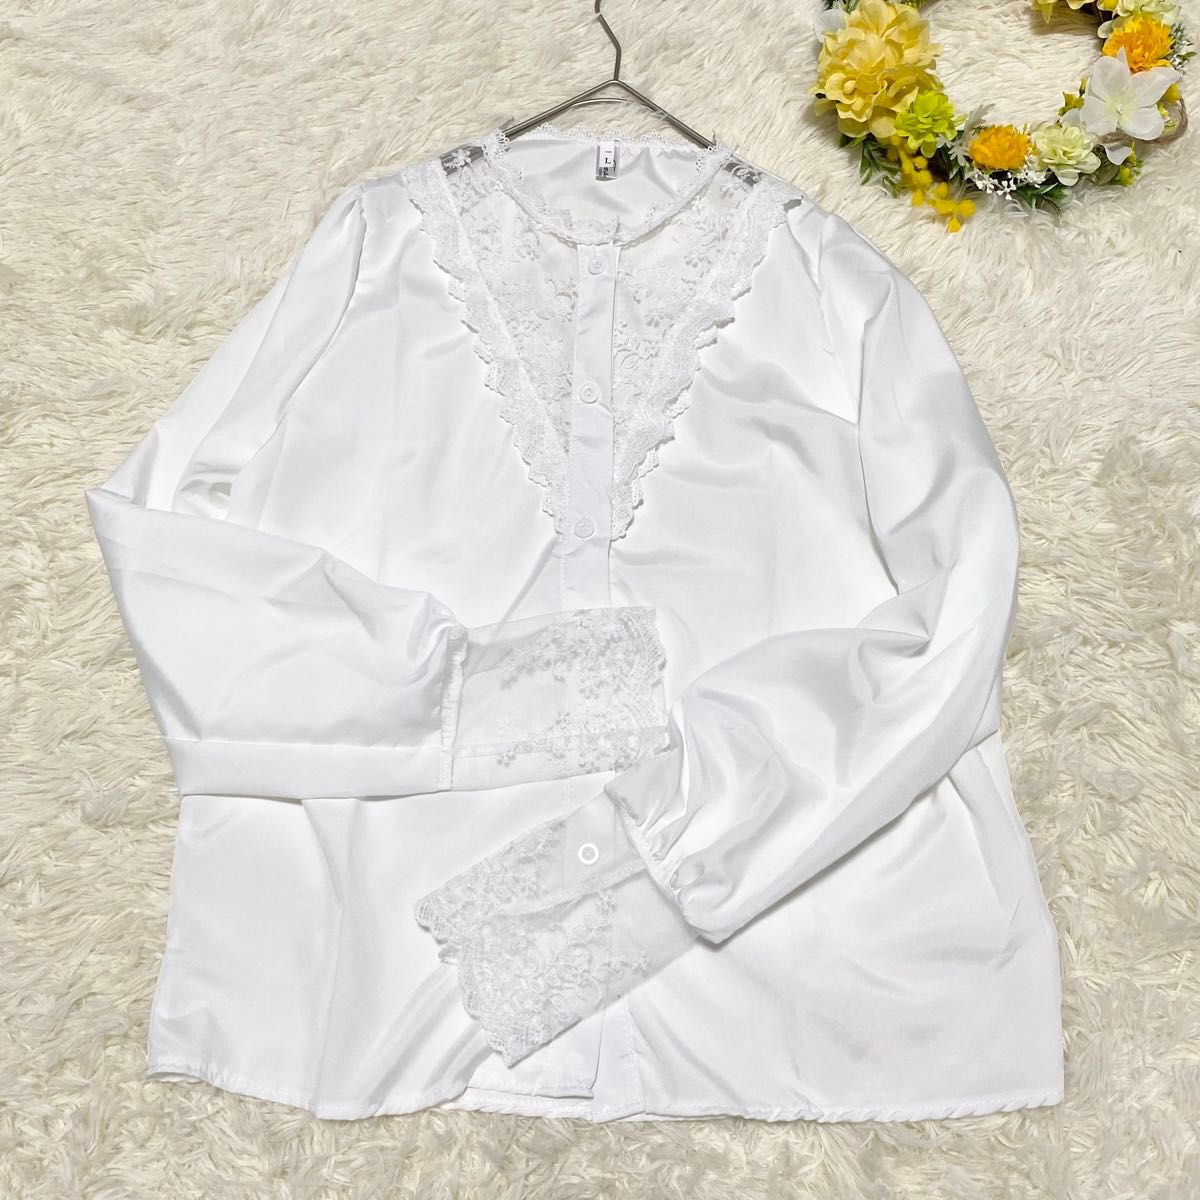 【新品未使用】レースシャツ ブラウス ホワイト 長袖 Lサイズ 韓国風